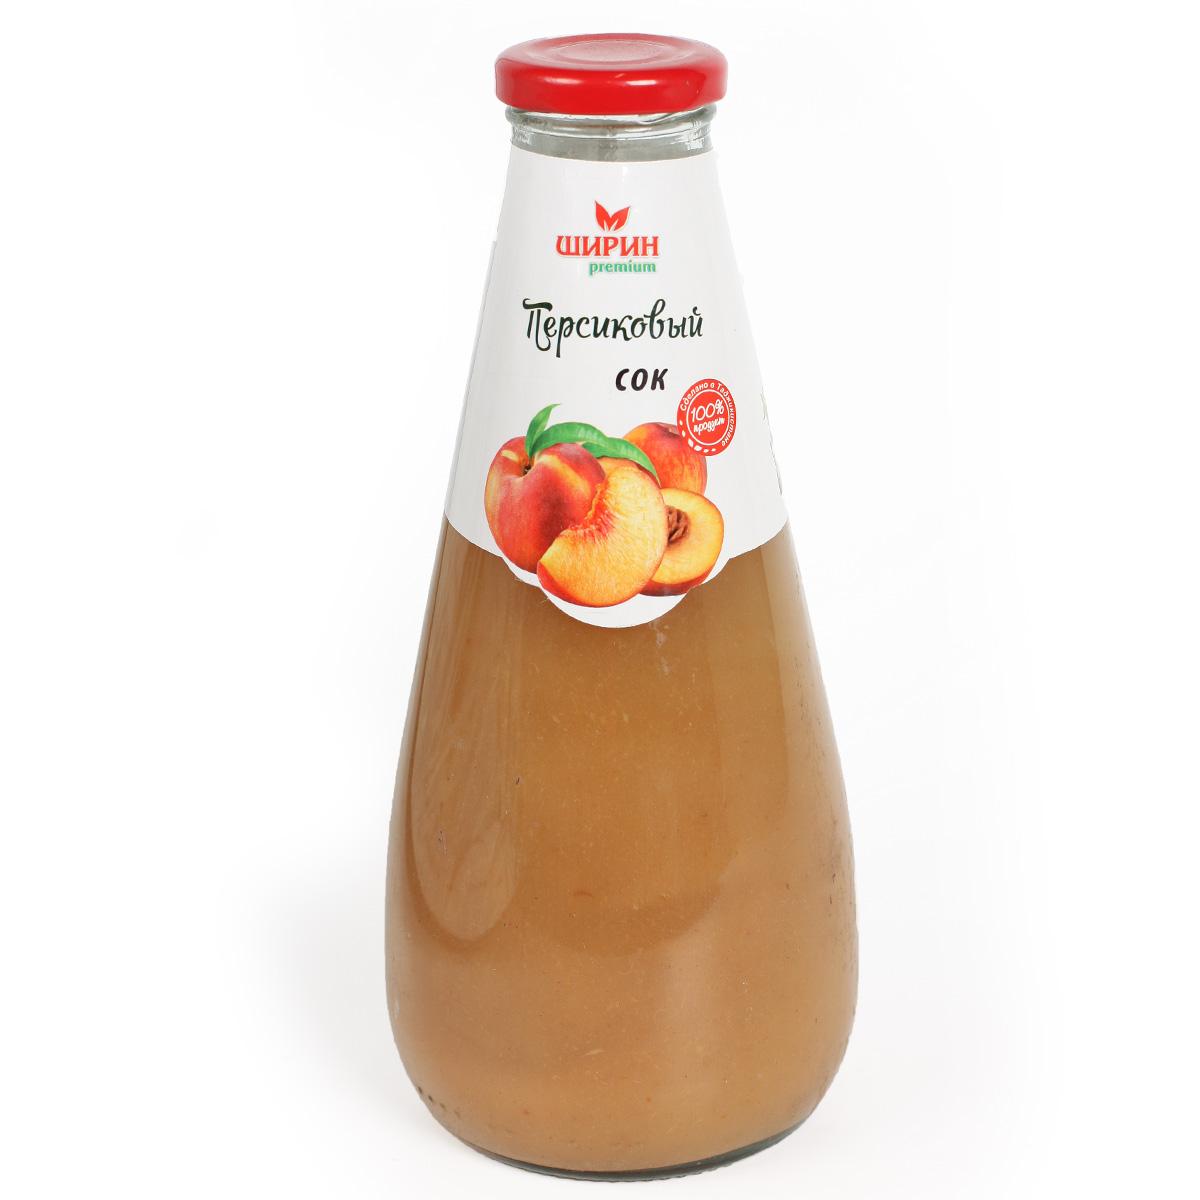 ШИРИН сок персиковый прямого отжима 0,75л